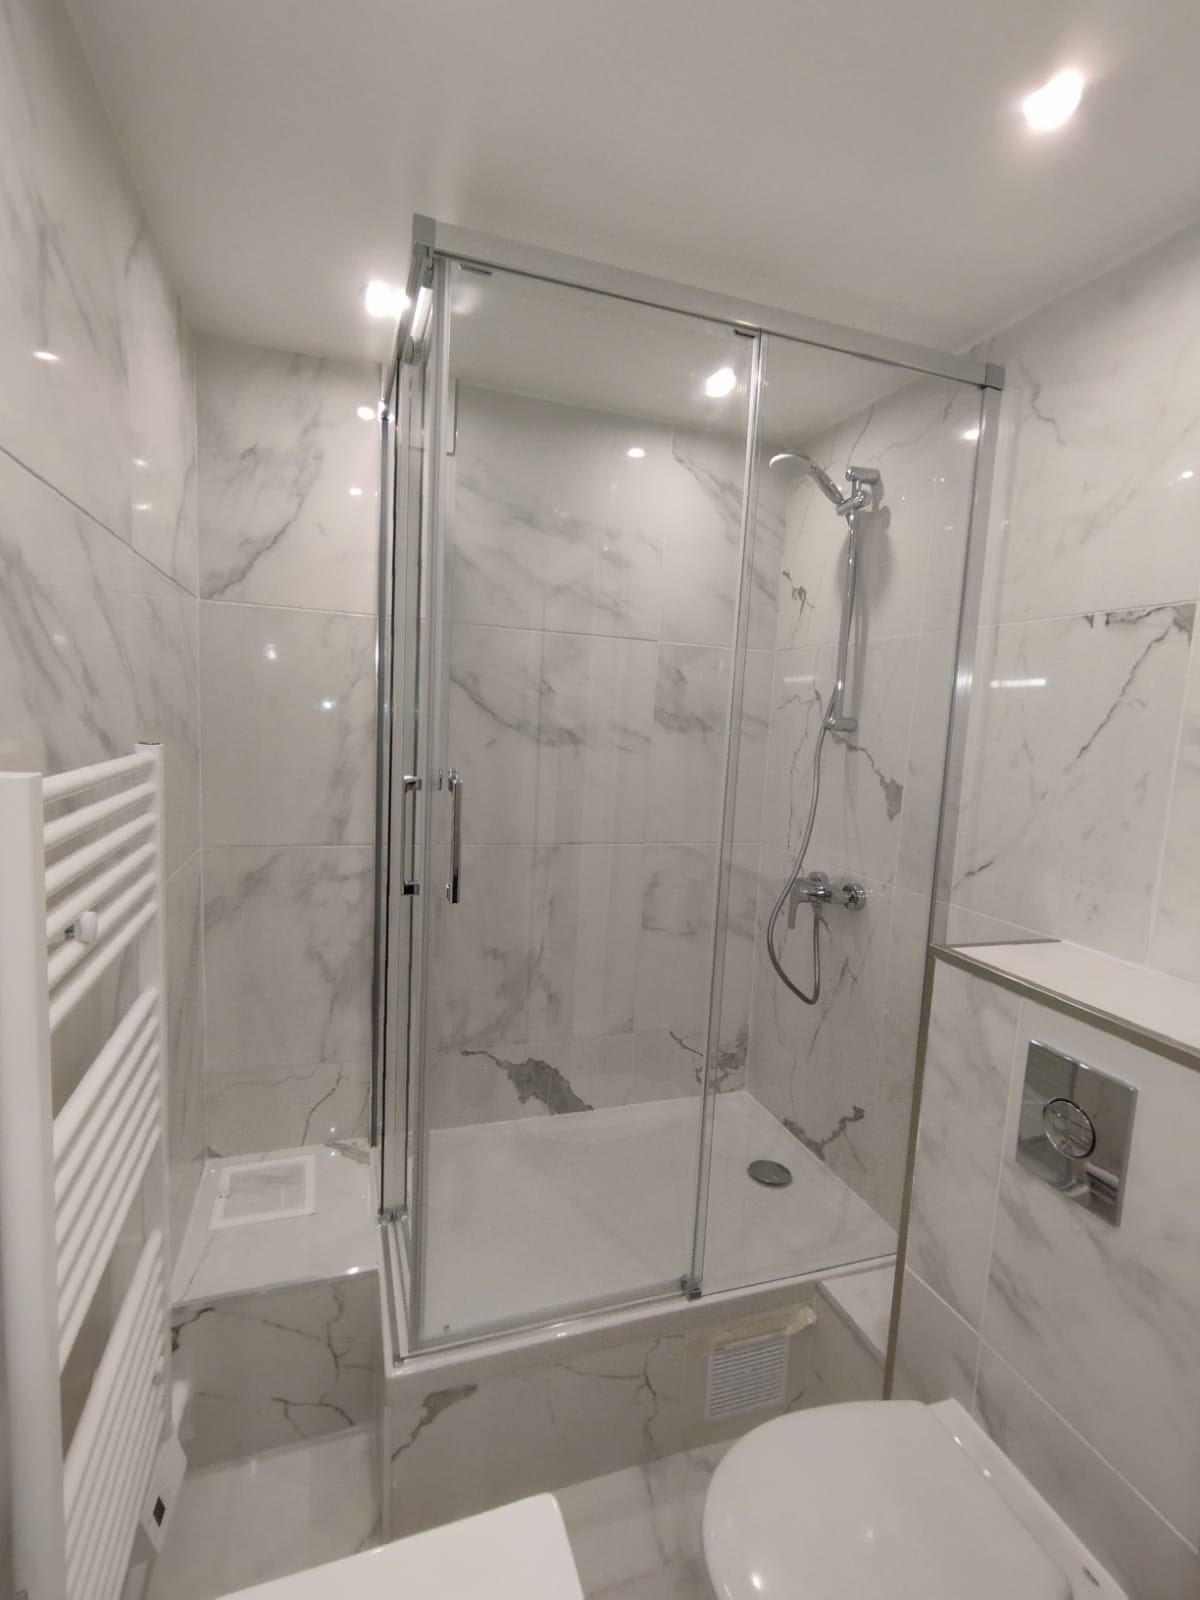 Douche|Dépose baignoire et installation douche 80x120cm , 10m² de carrelage,robinneterie et pare douche à Paris 75015 , Budget 7200€.